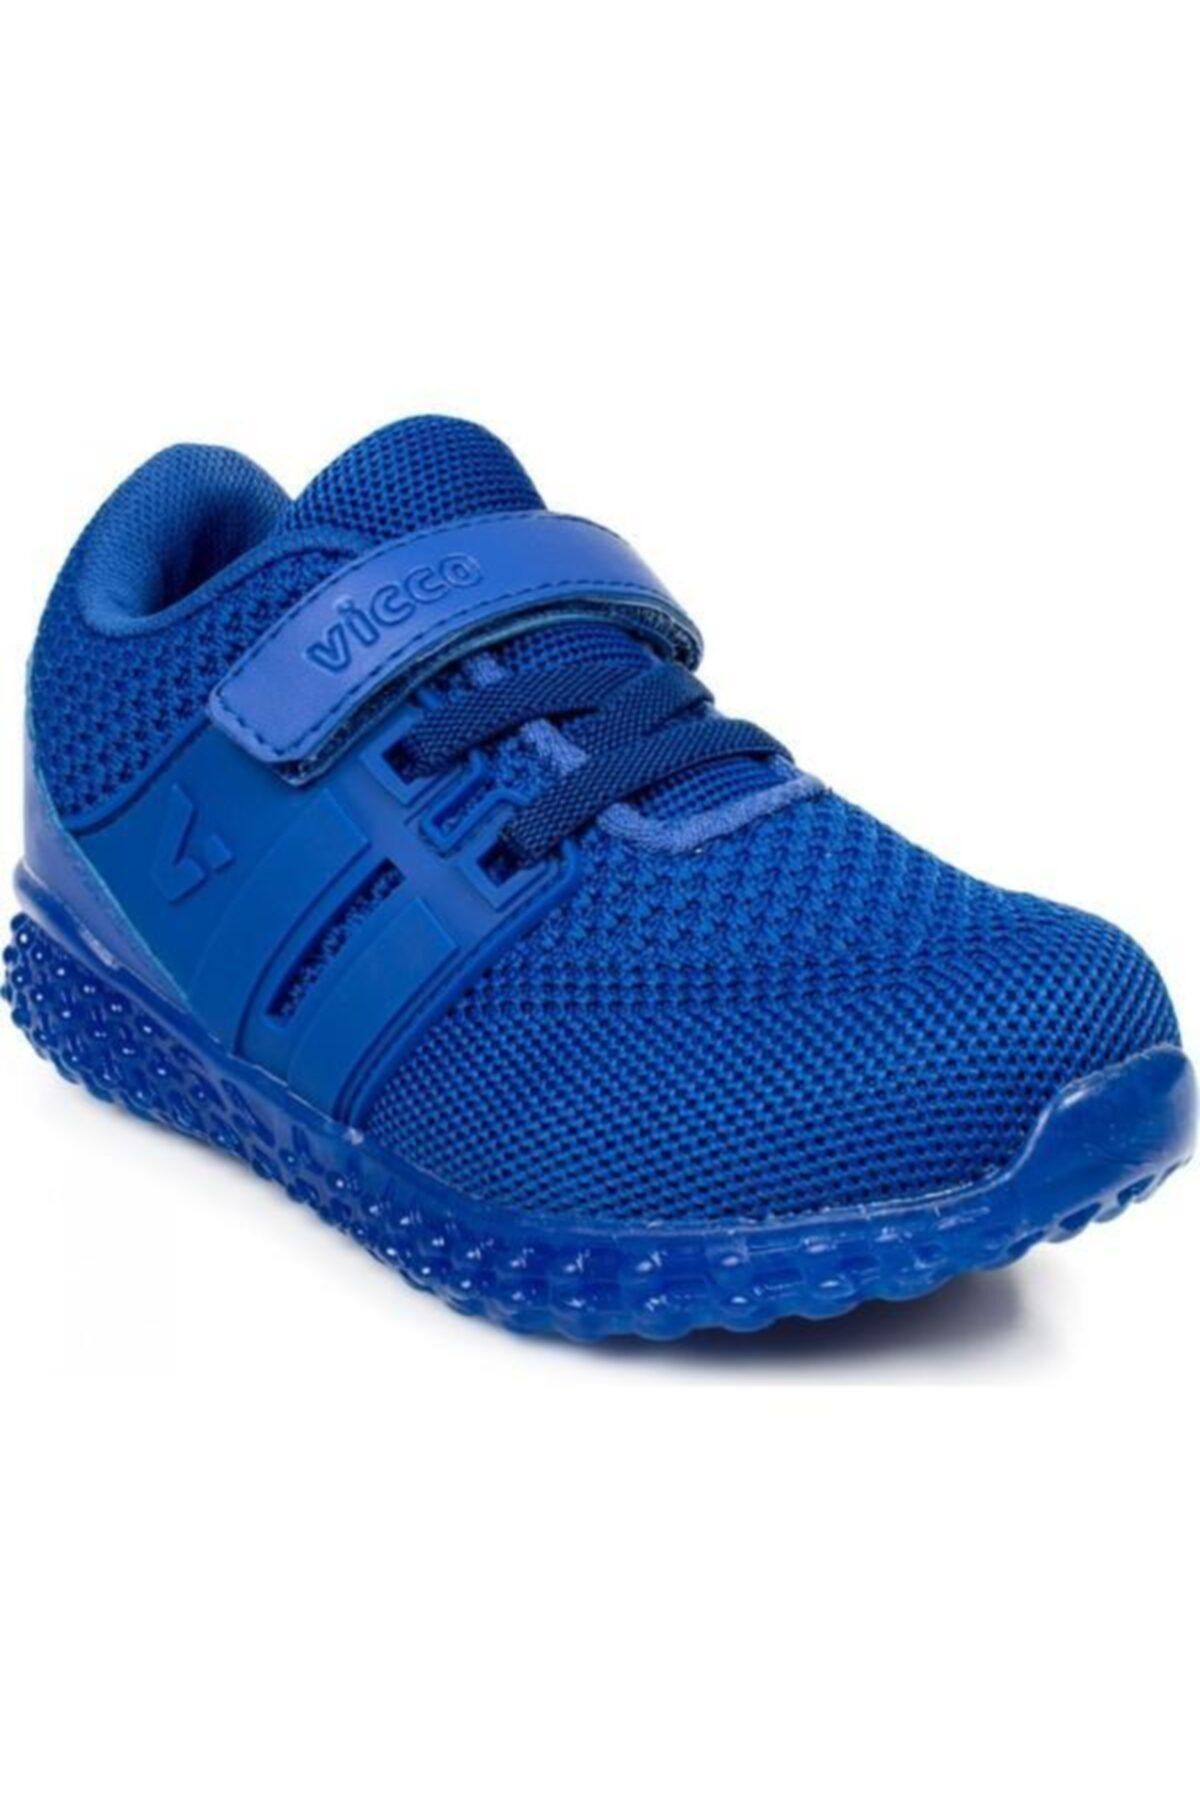 Vicco 313.p20y.102 Patik Işıklı Mavi Çocuk Spor Ayakkabı